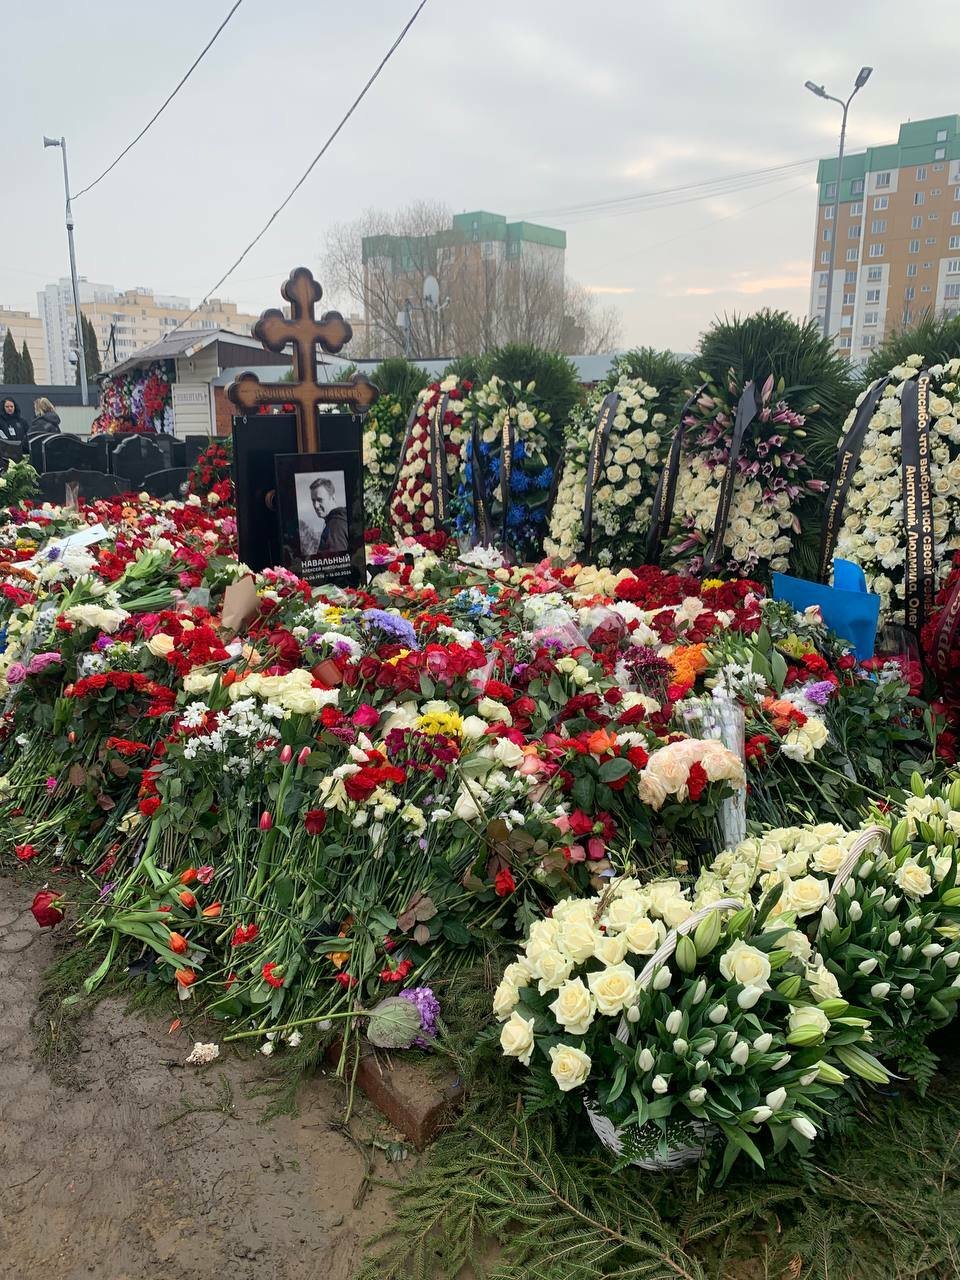 Vzpomínka na Alexeje Navalného. Davy lidí přicházejí na hrob a nosí květiny a vzpomínkové předměty